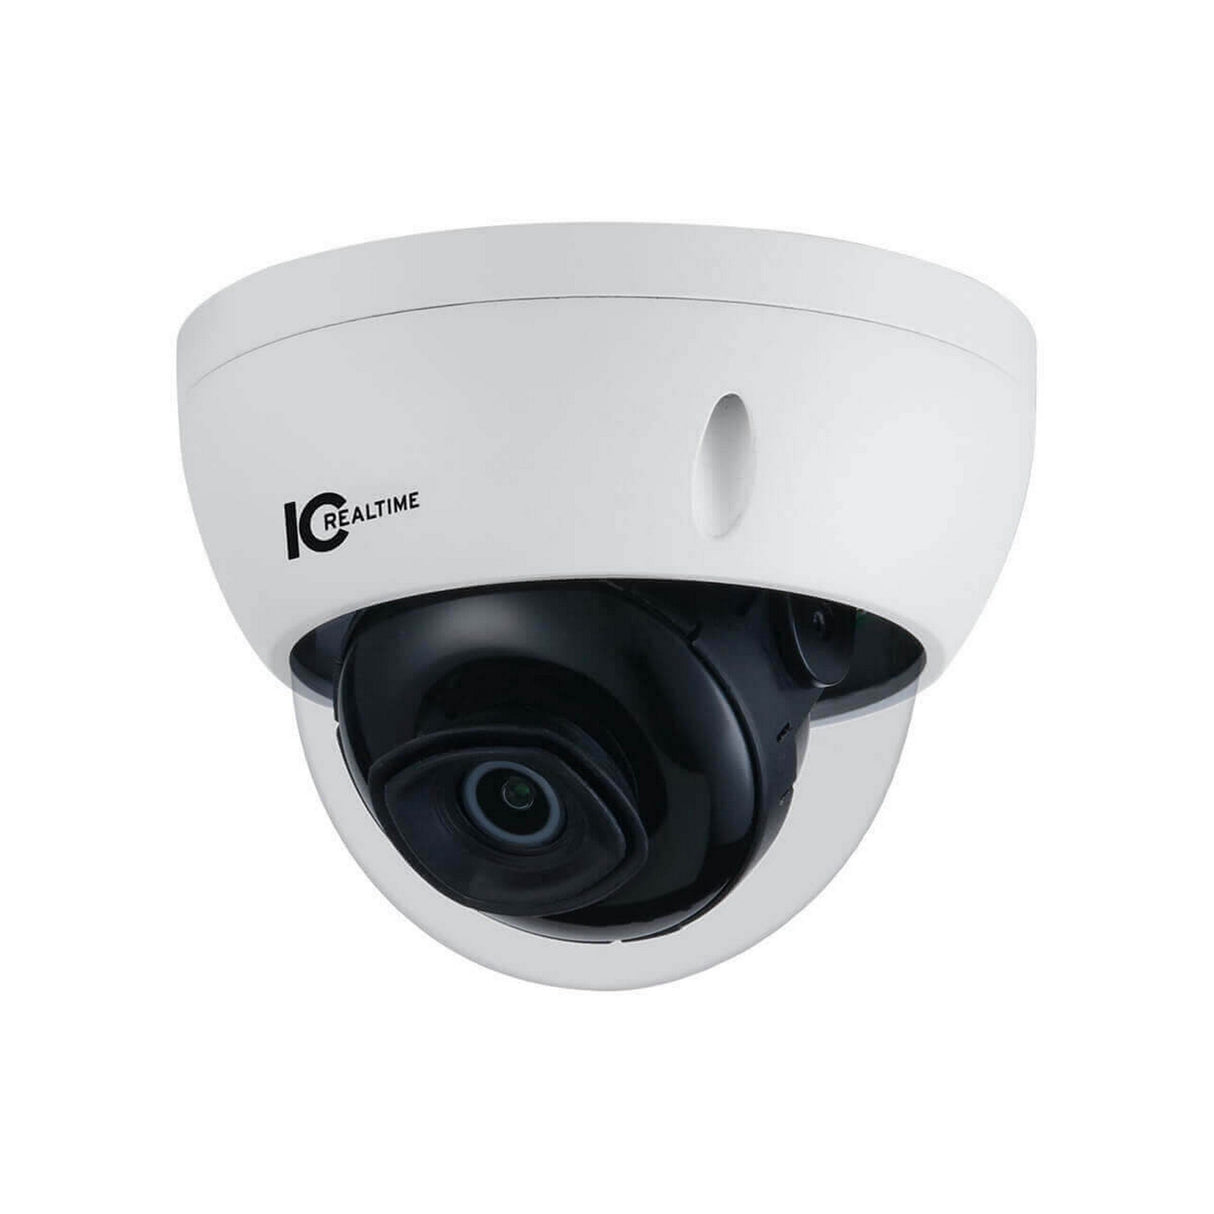 IC Realtime IPMX-D20F-IRW2 2 Megapixel IP Indoor/Outdoor Small Size Vandal Dome Camera